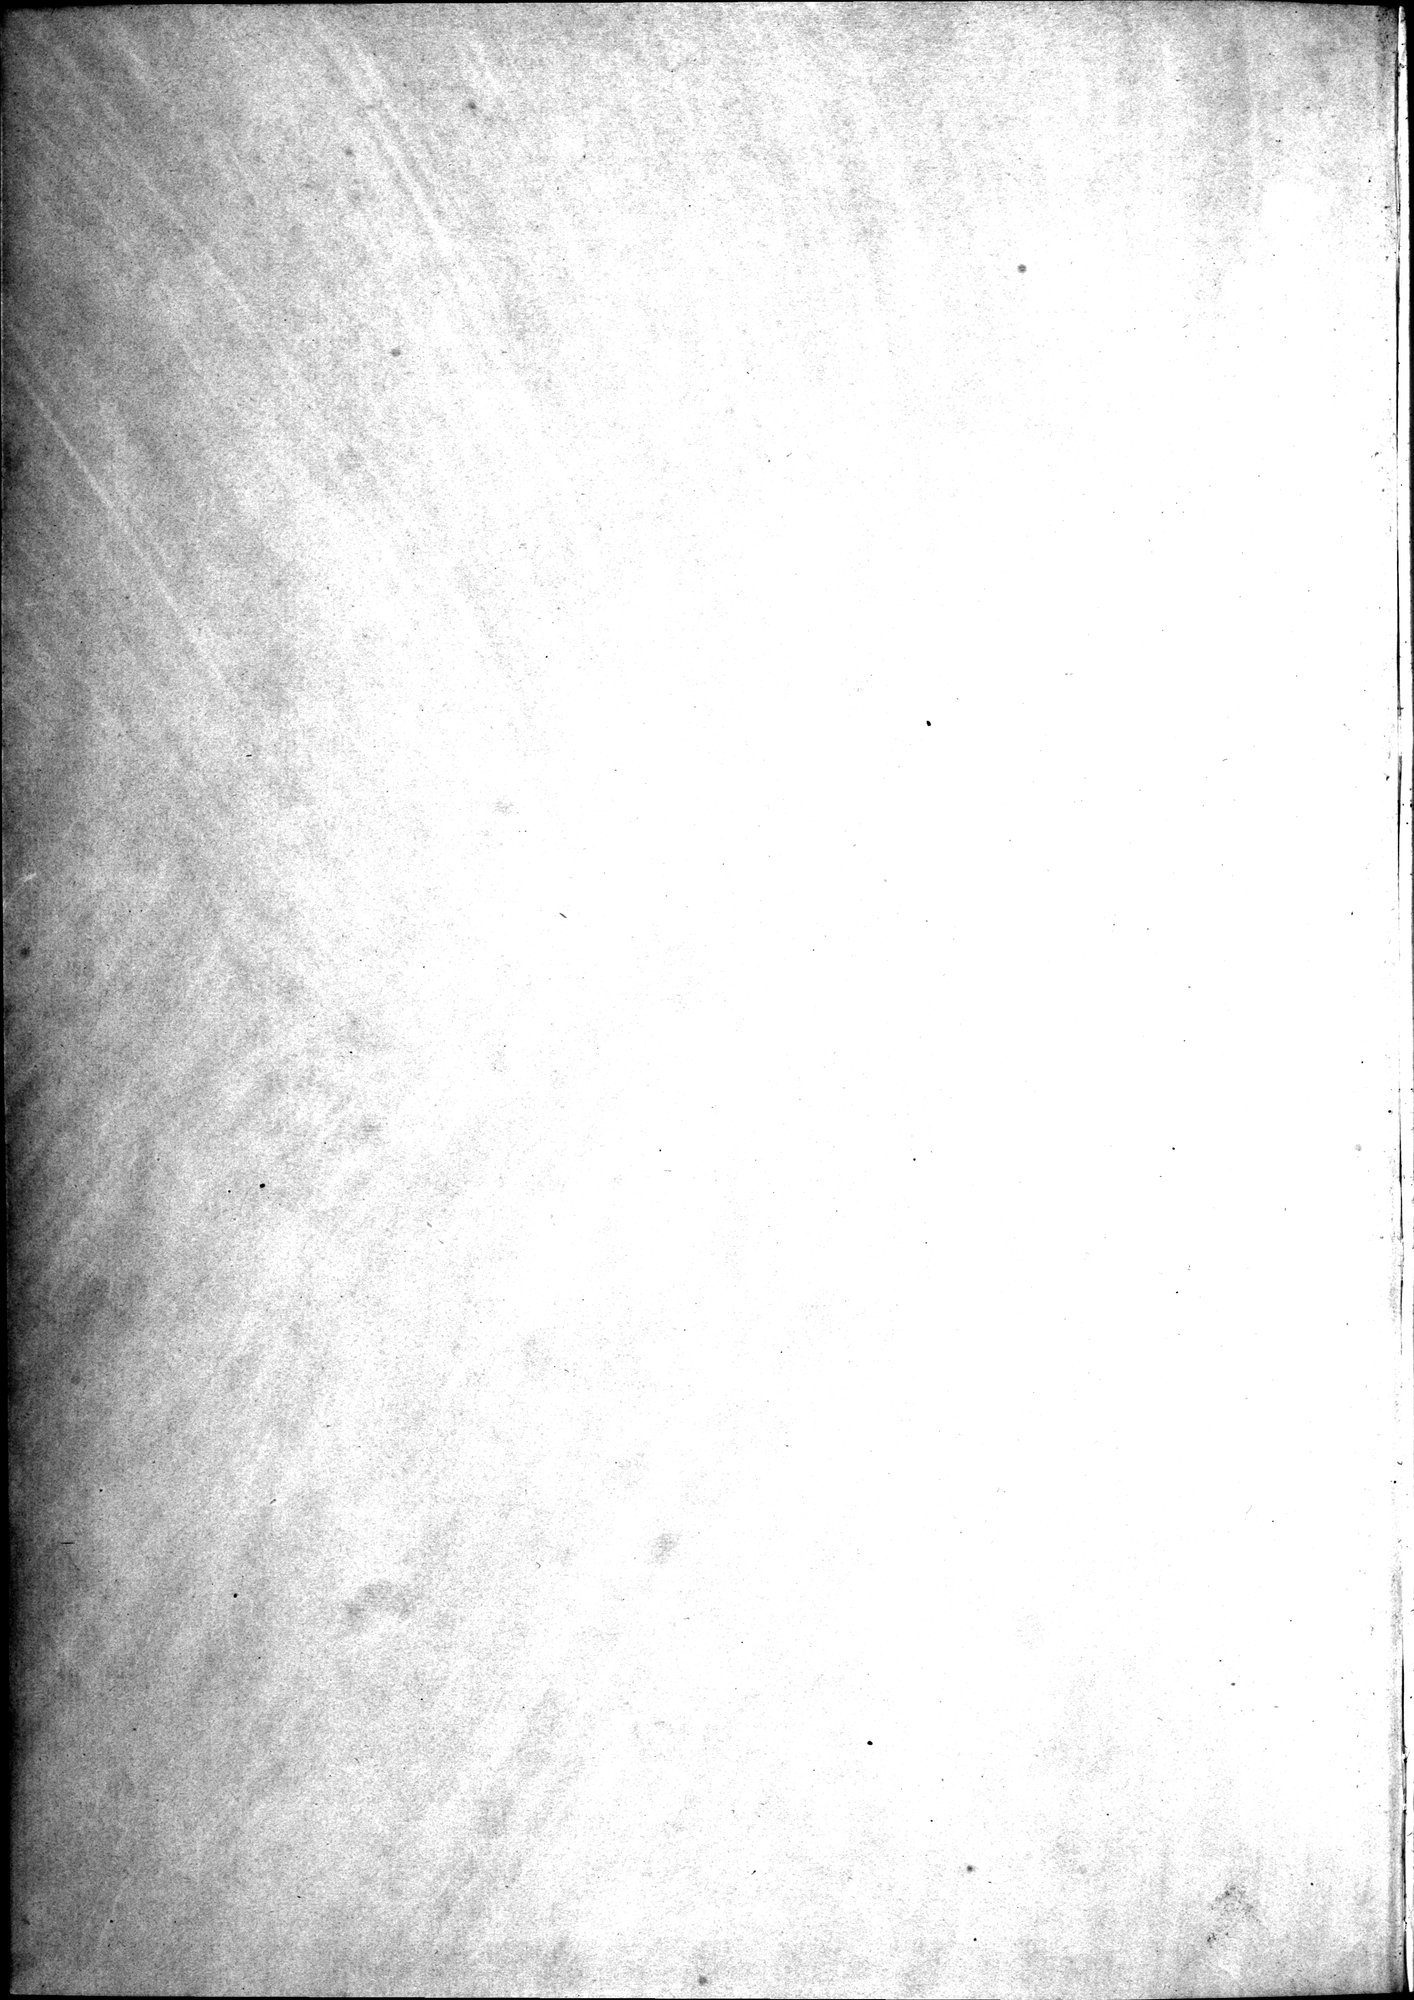 Kunstgeschichte der Seidenweberei : vol.1 / Page 4 (Grayscale High Resolution Image)